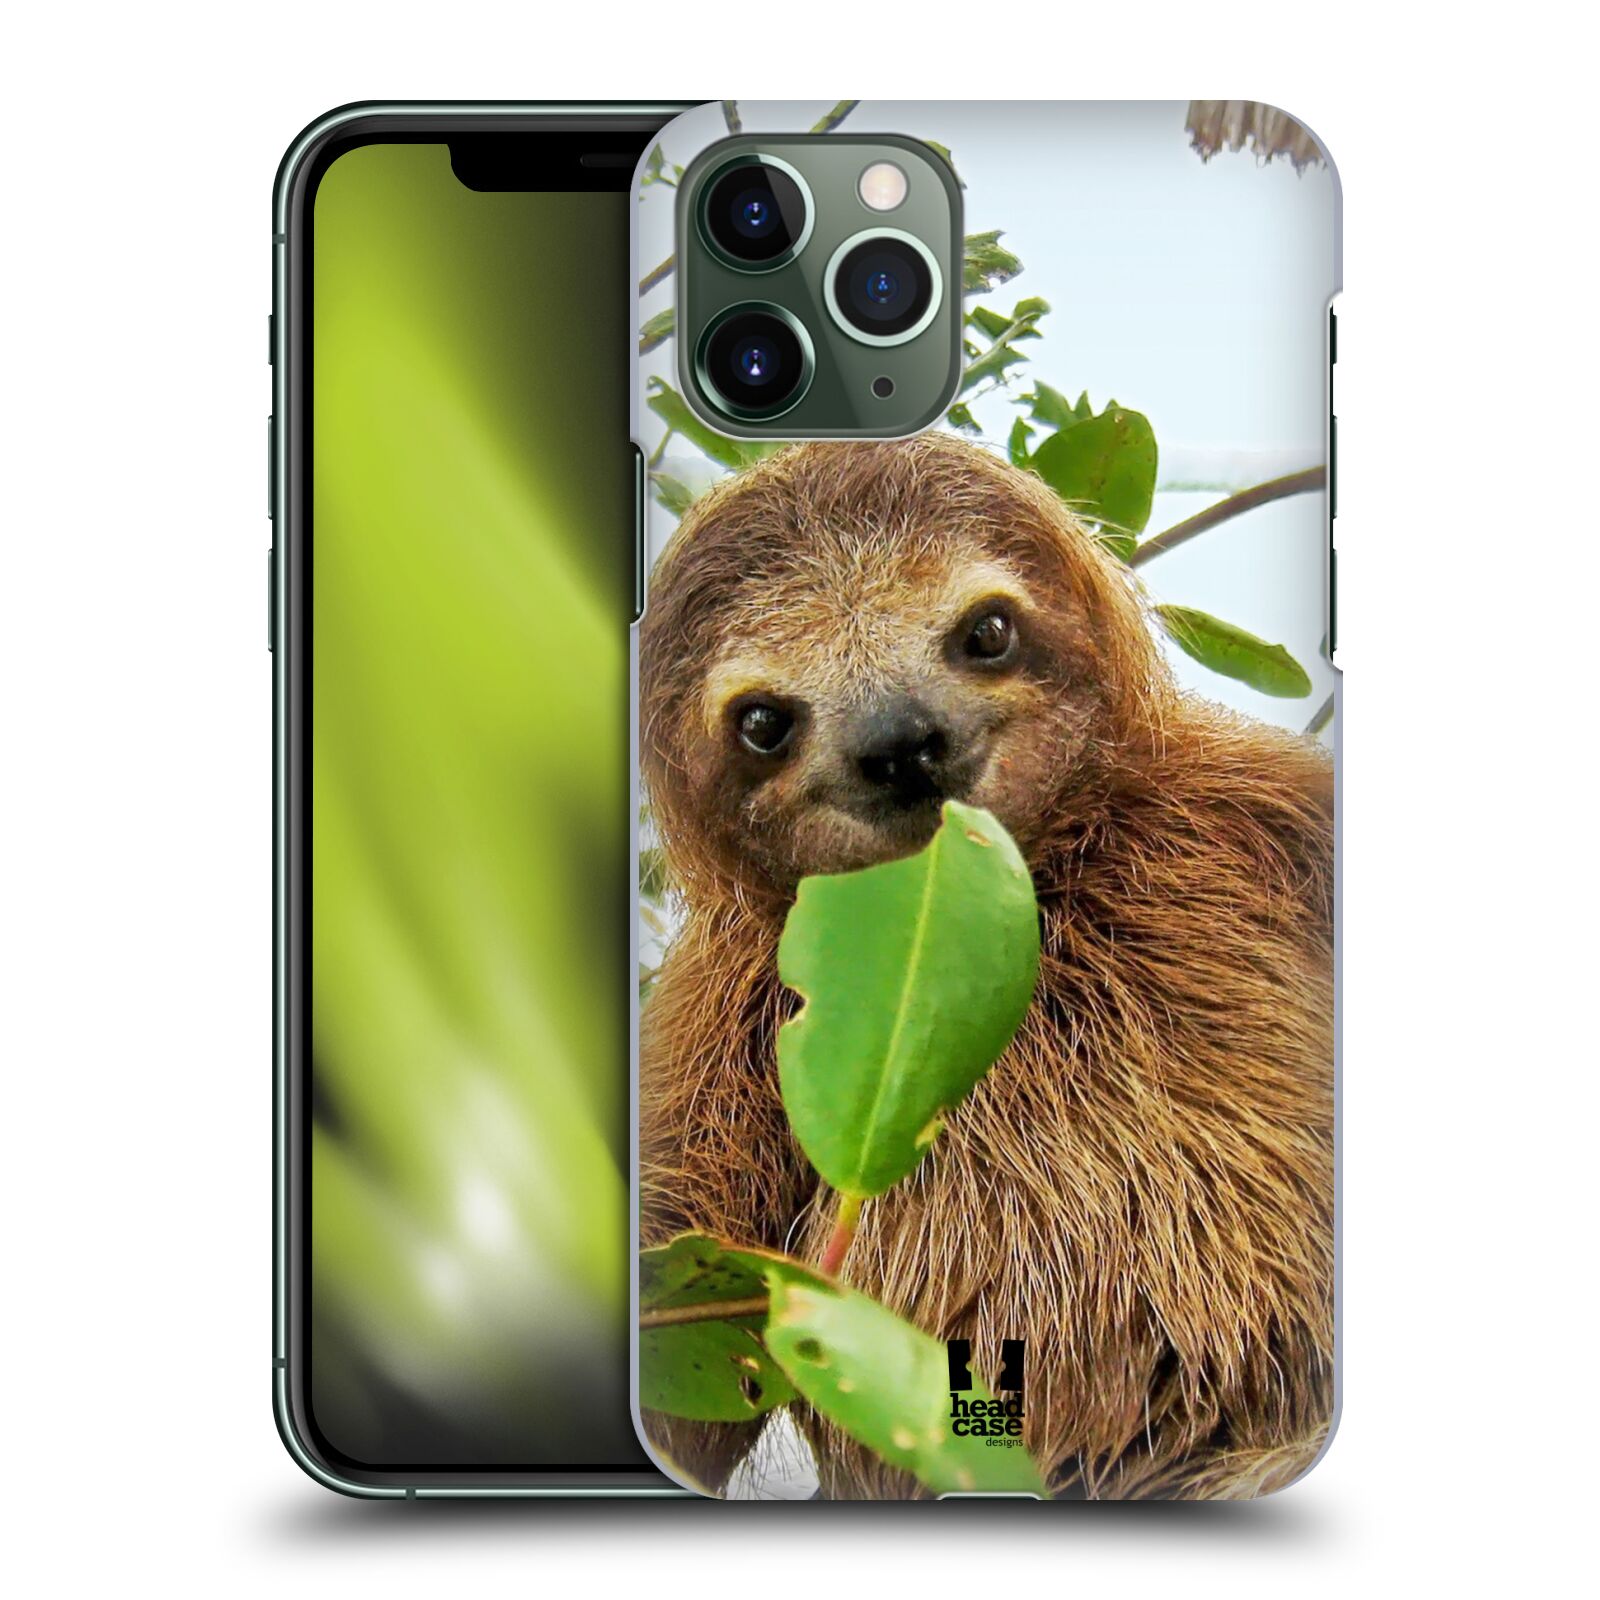 Pouzdro na mobil Apple Iphone 11 PRO - HEAD CASE - vzor slavná zvířata foto lenochod